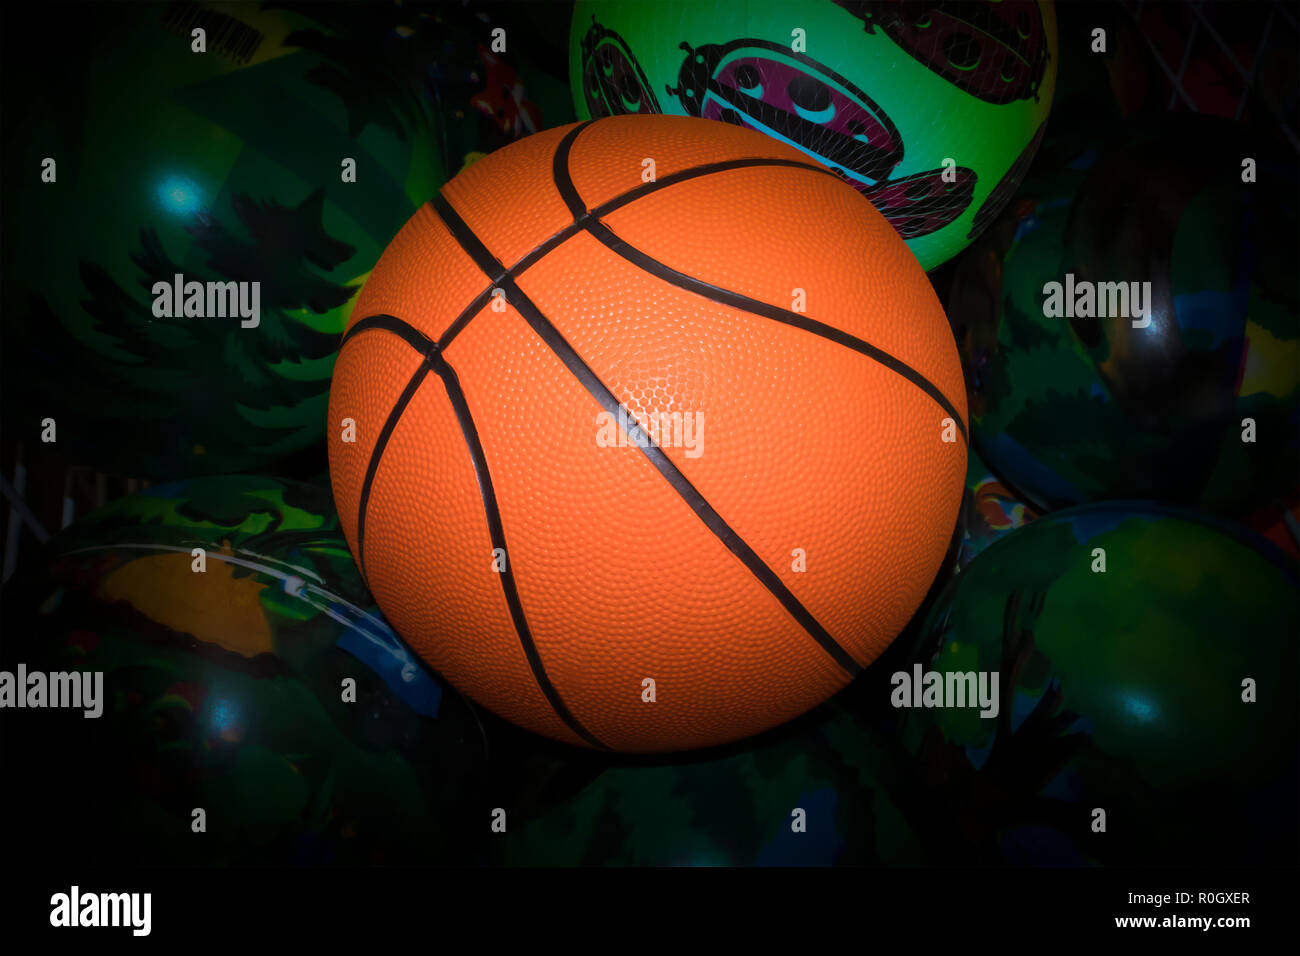 Pelota de baloncesto naranja brillante contra pintados de verde las bolas con oscurecido vignette Foto de stock